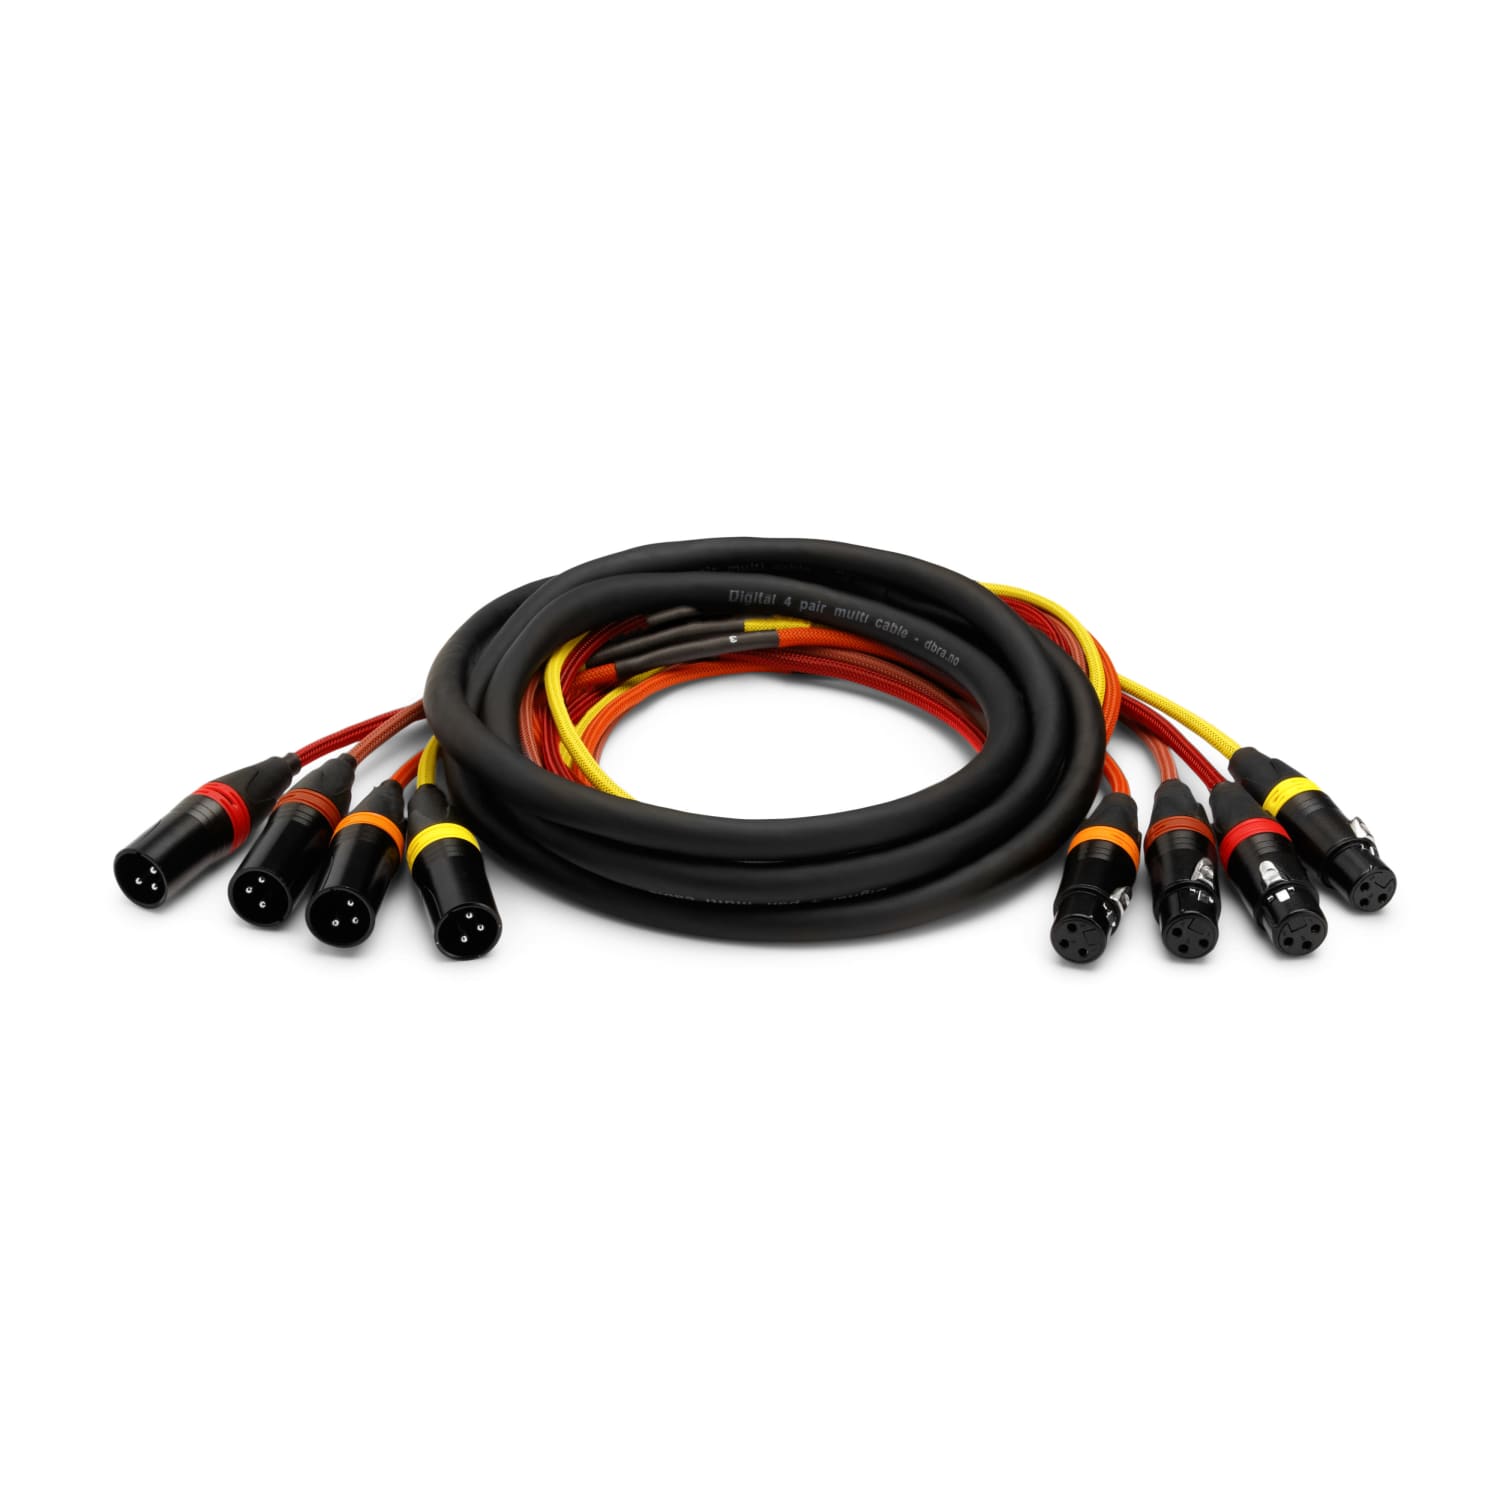 4-PAR kabel 4 x XLR-F til 4 x XLR-M, 3P